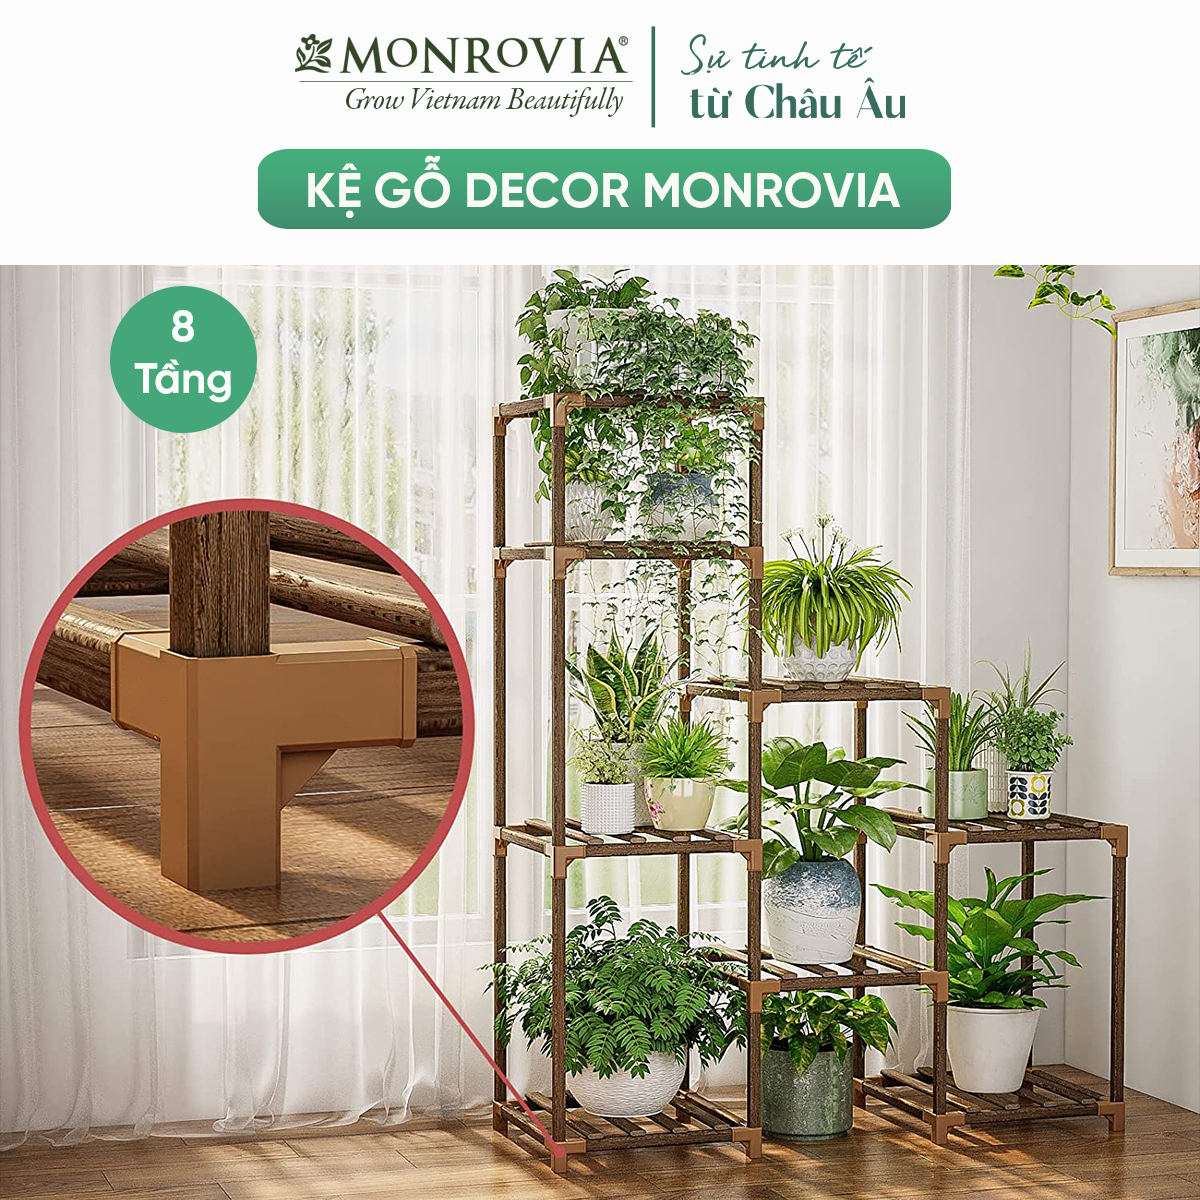 Kệ gỗ decor Monrovia để cây trang trí trong nhà, ban công siêu bền bỉ, tiêu chuẩn Châu Âu